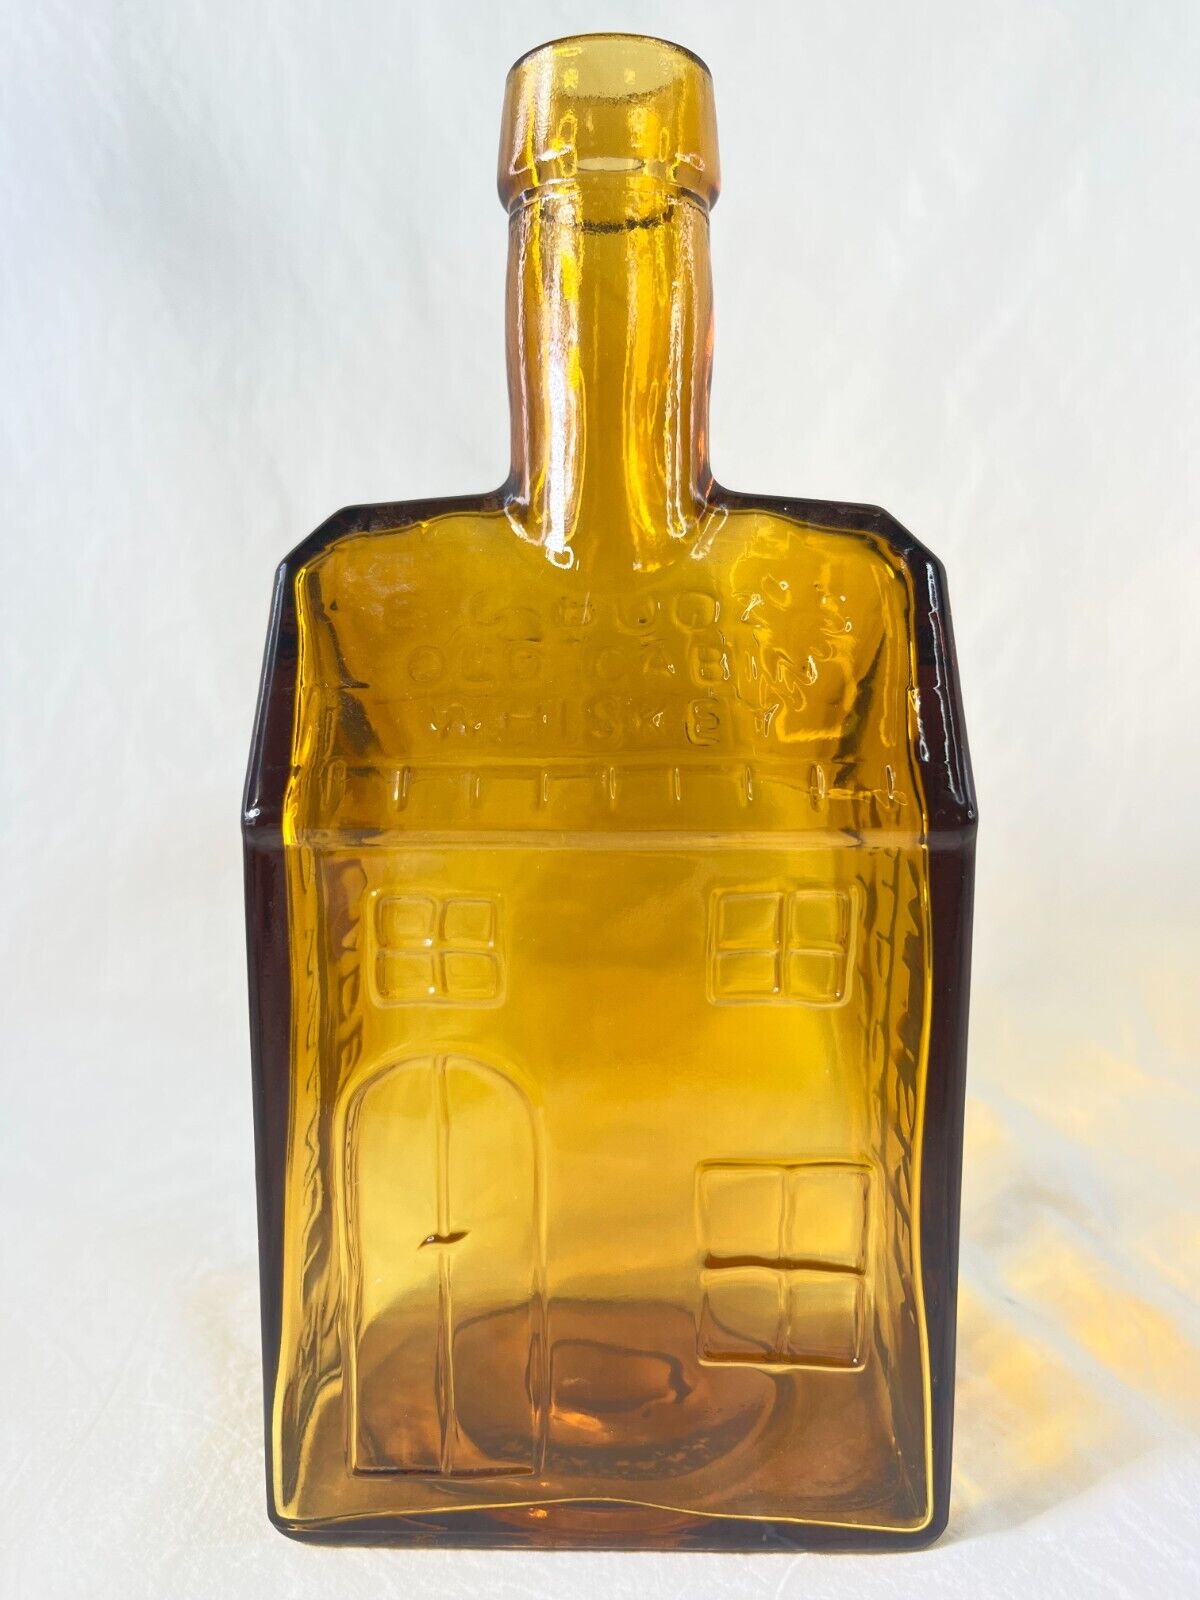 Vintage amber glass  E.C. Booz’s Old Cabin Whiskey Bottle 1840 Philadelphia PA